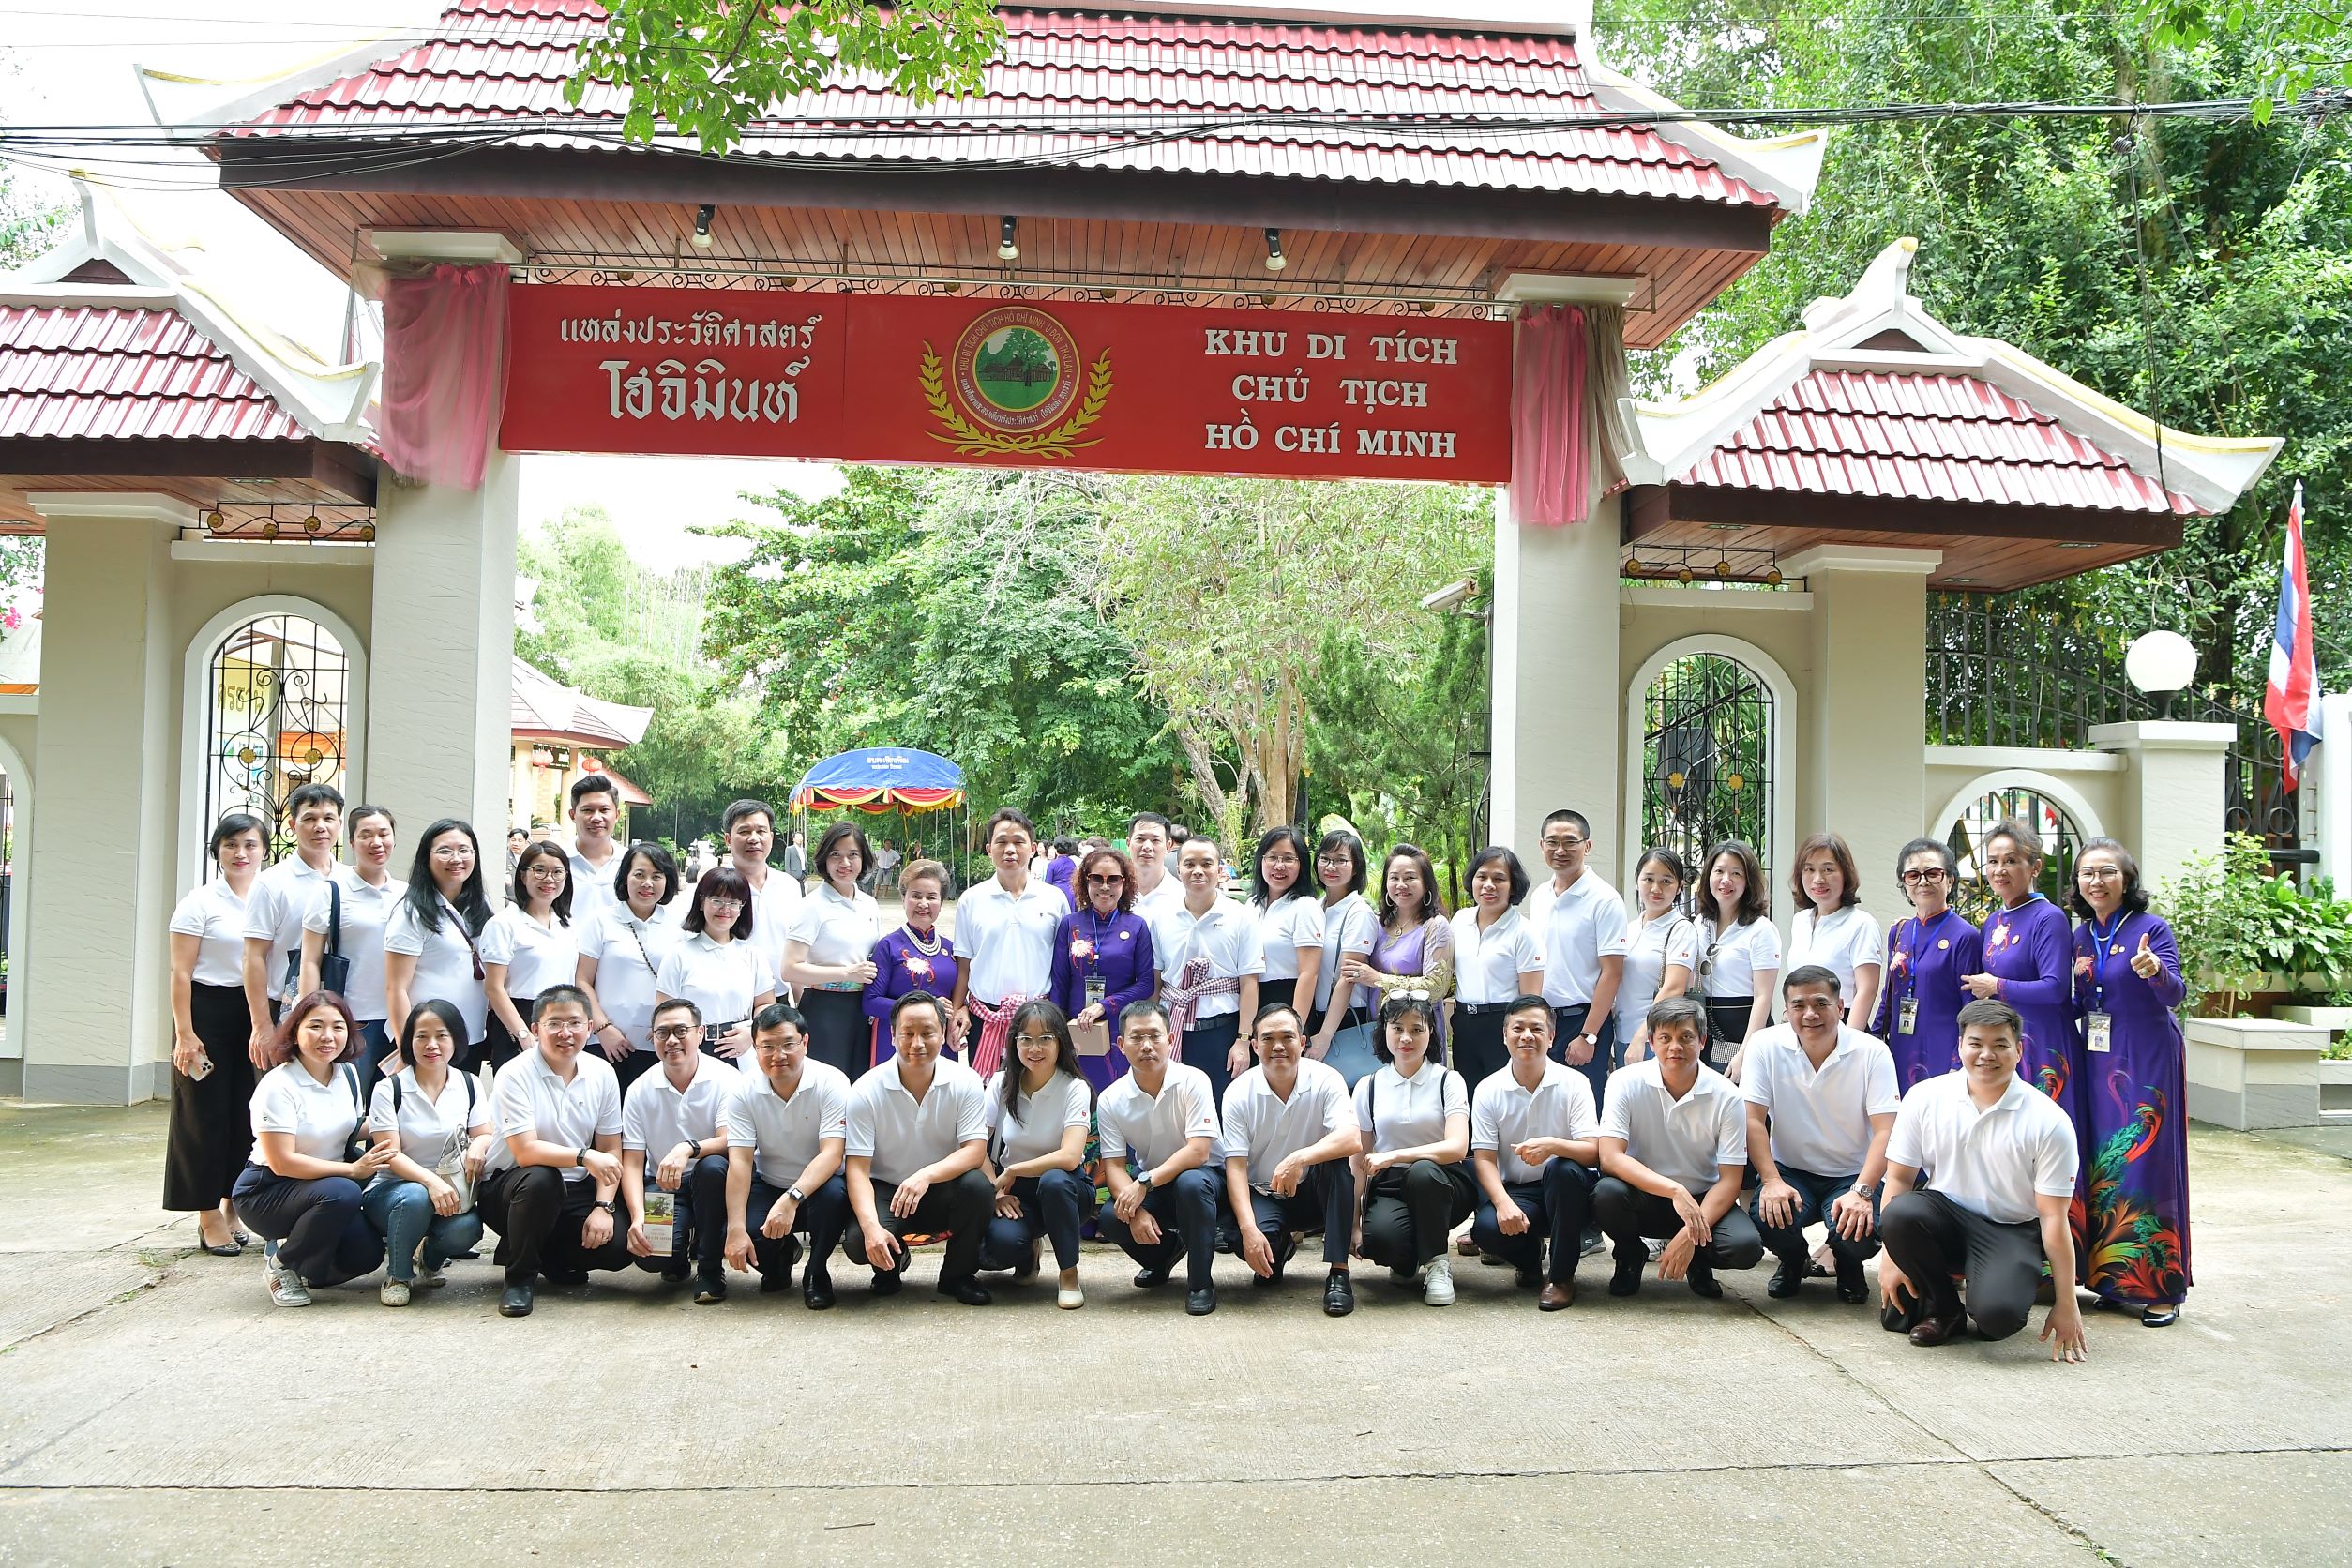 Đoàn công tác của Đảng bộ Trụ sở chính Vietcombank làm việc với Vietcombank Lào và tổ chức Lễ dâng hương Chủ tịch Hồ Chí Minh tại Khu di tích Chủ tịch Hồ Chí Minh - Udon Thani, Vương quốc Thái Lan 